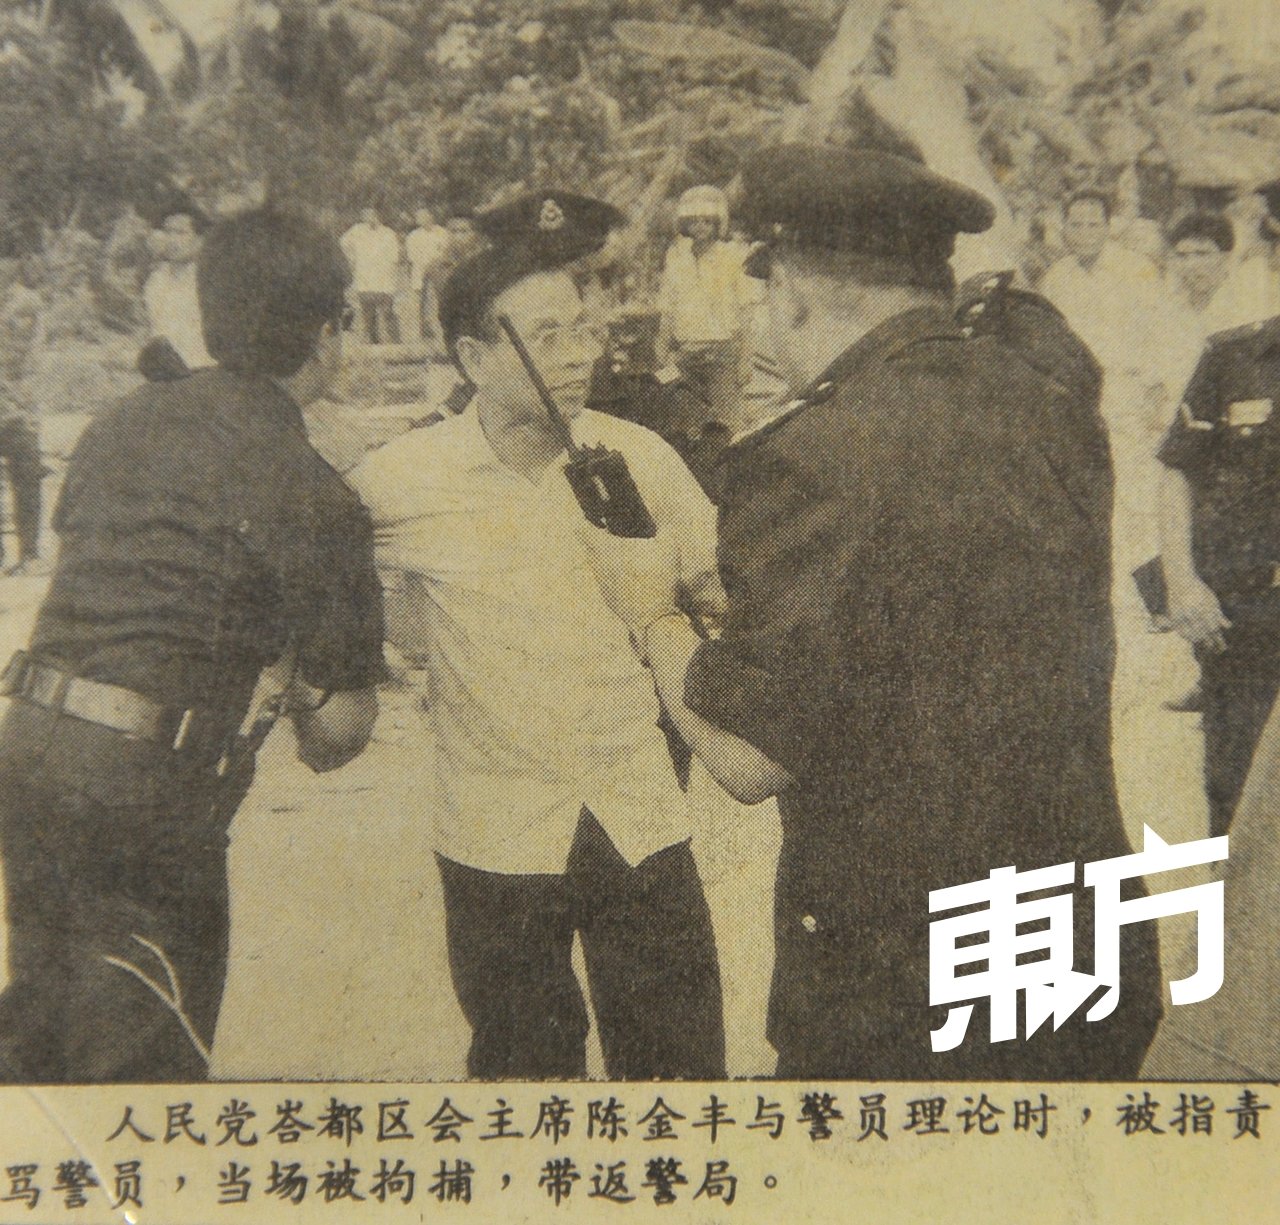 陈进丰为反抗拆迁木屋区经常和执法单位周旋，他出示1994年的这张照片，笑指：“同样的状况发生无数次，这次是难得被拍下。”